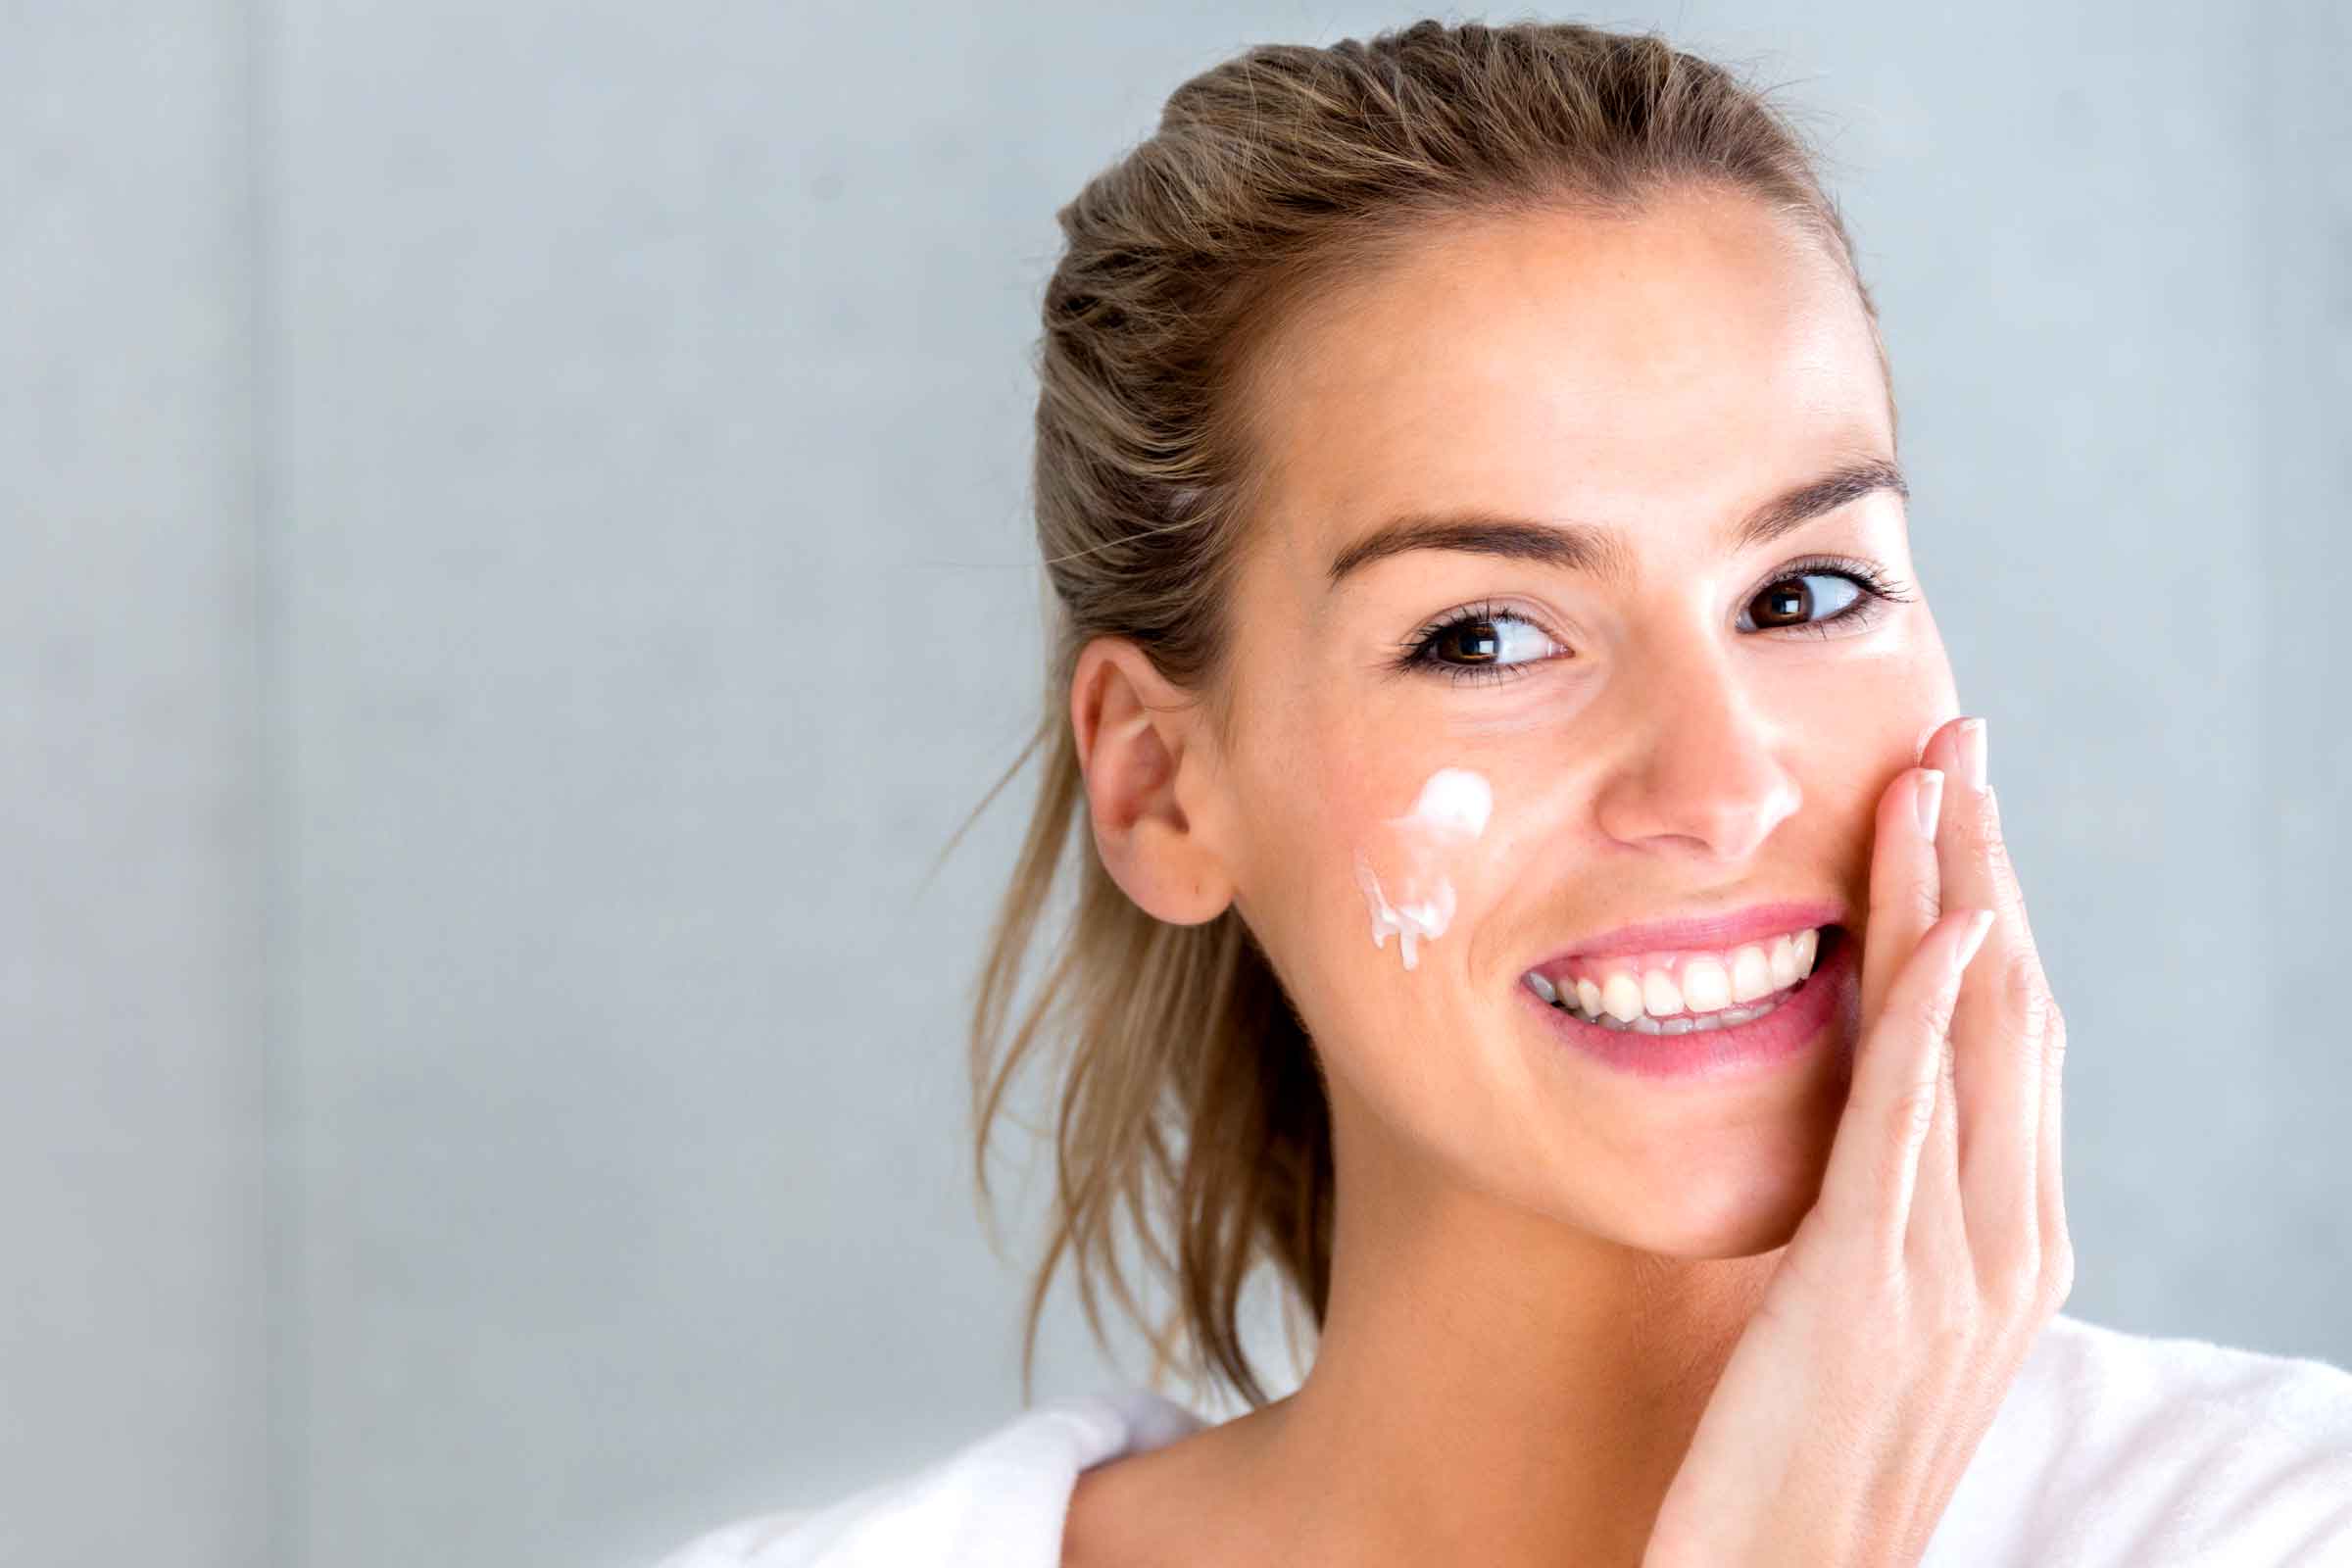   Cần dưỡng ẩm da thường xuyên để giúp da mịn màng  